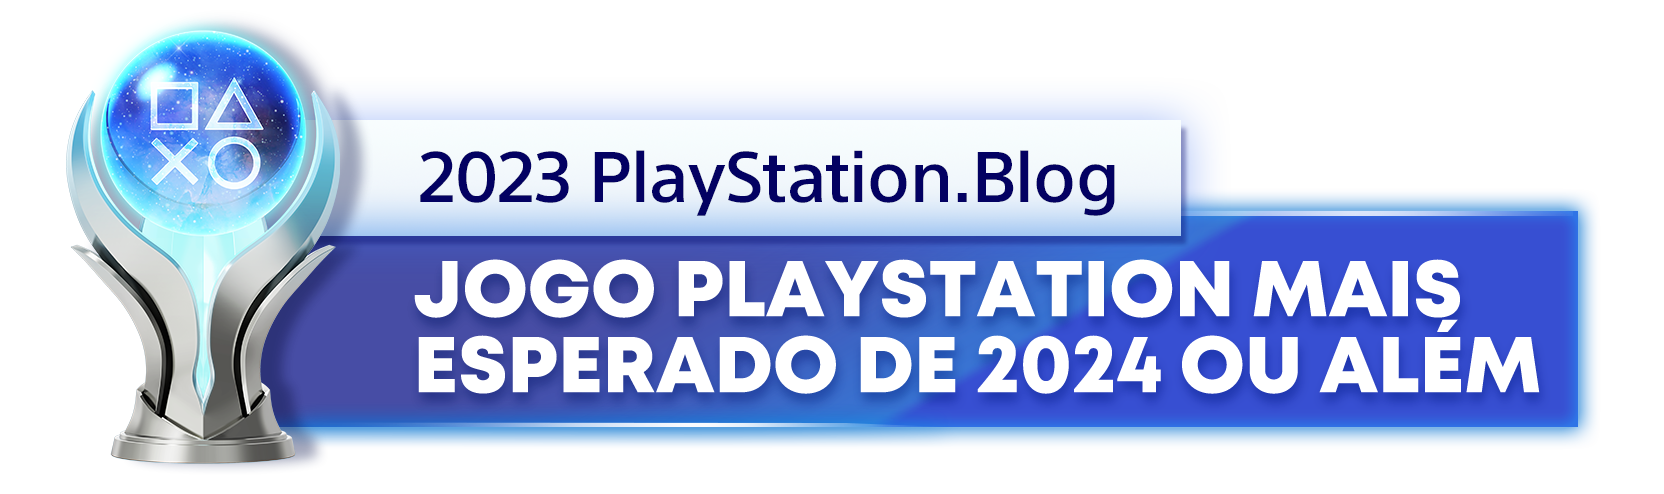  "Troféu de Platina para o vencedor da categoria Jogo PlayStation mais esperado de 2024 ou além, do ano de 2023 do Playstation Blog "